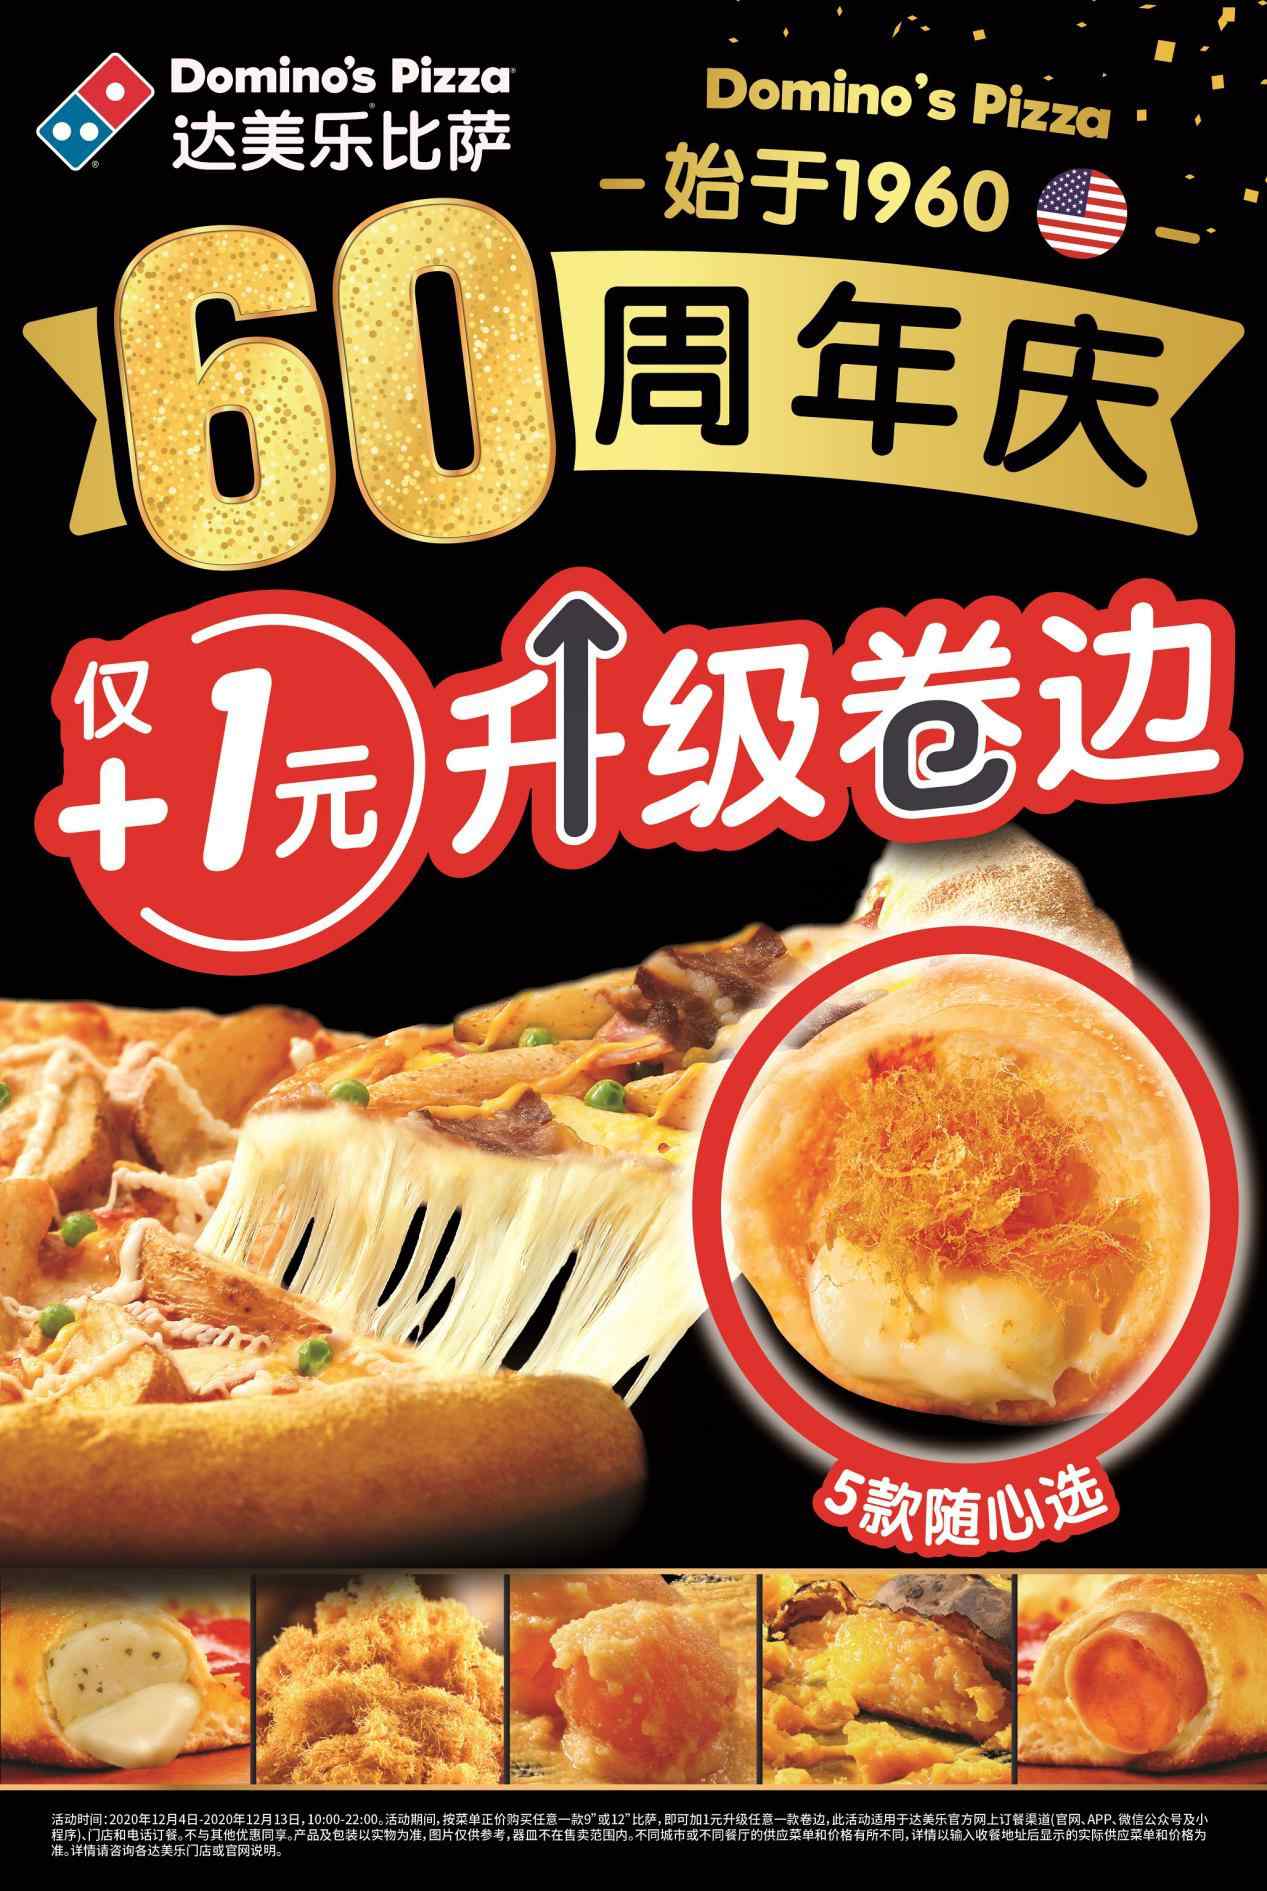 达美乐北京第100家门店开业 比萨买一送一